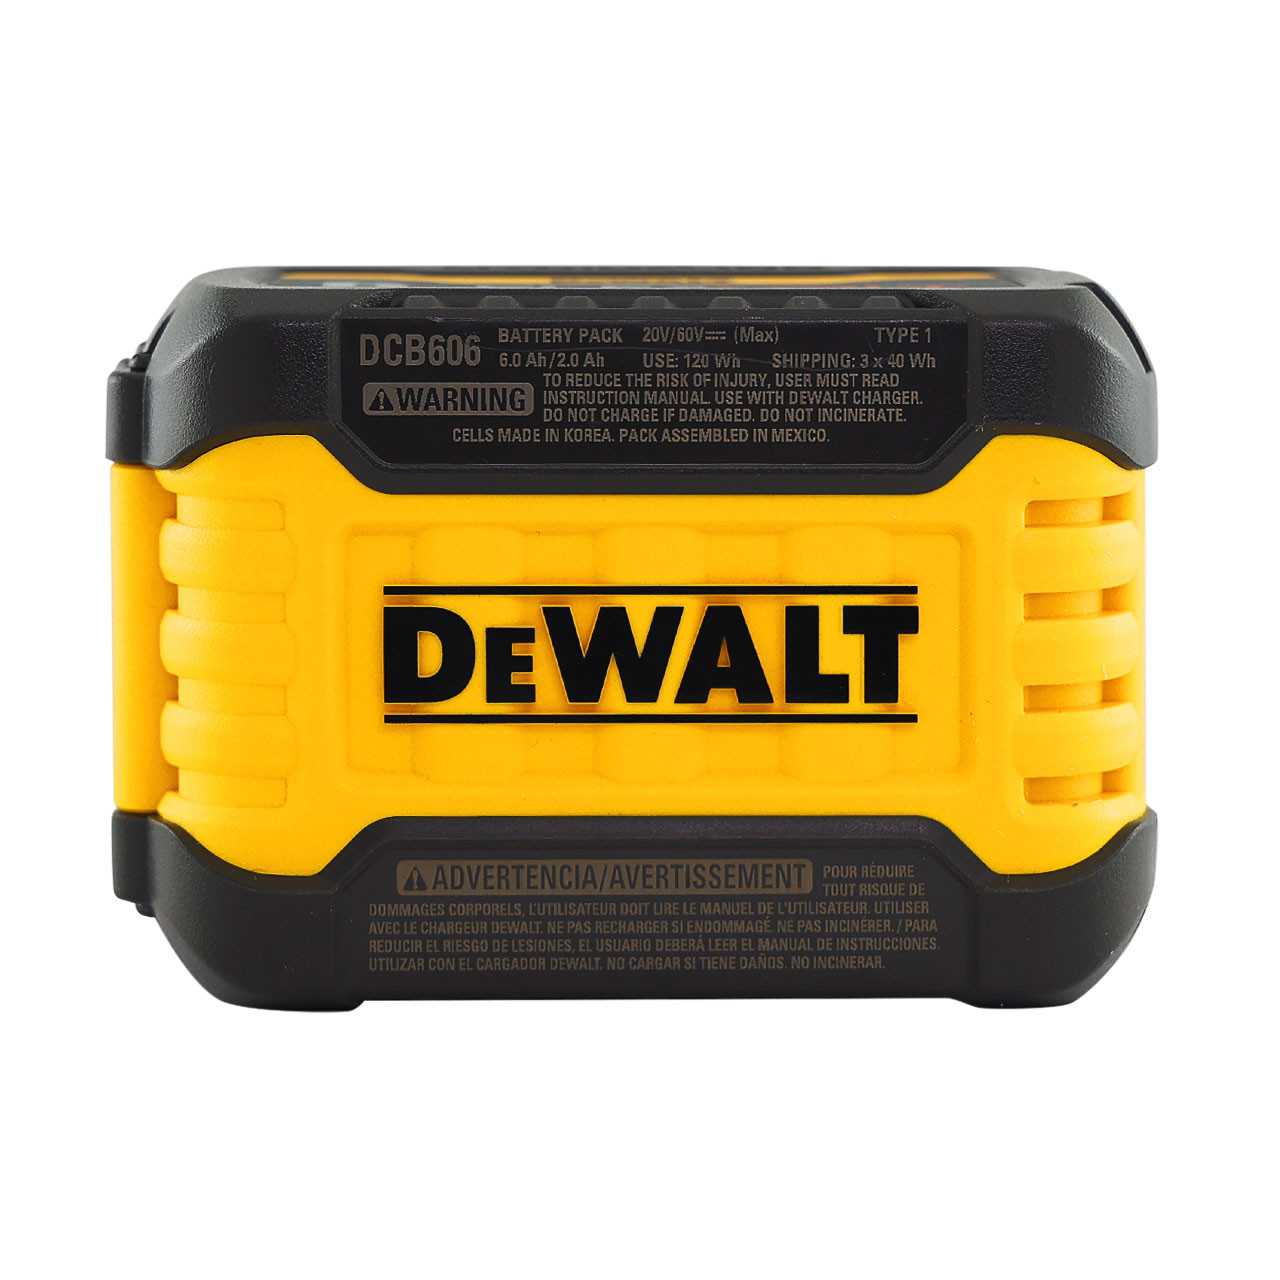 Batería Dewalt dcb606-2 flexvolt 20v/60v max, 6.0-ah - paquete de 2